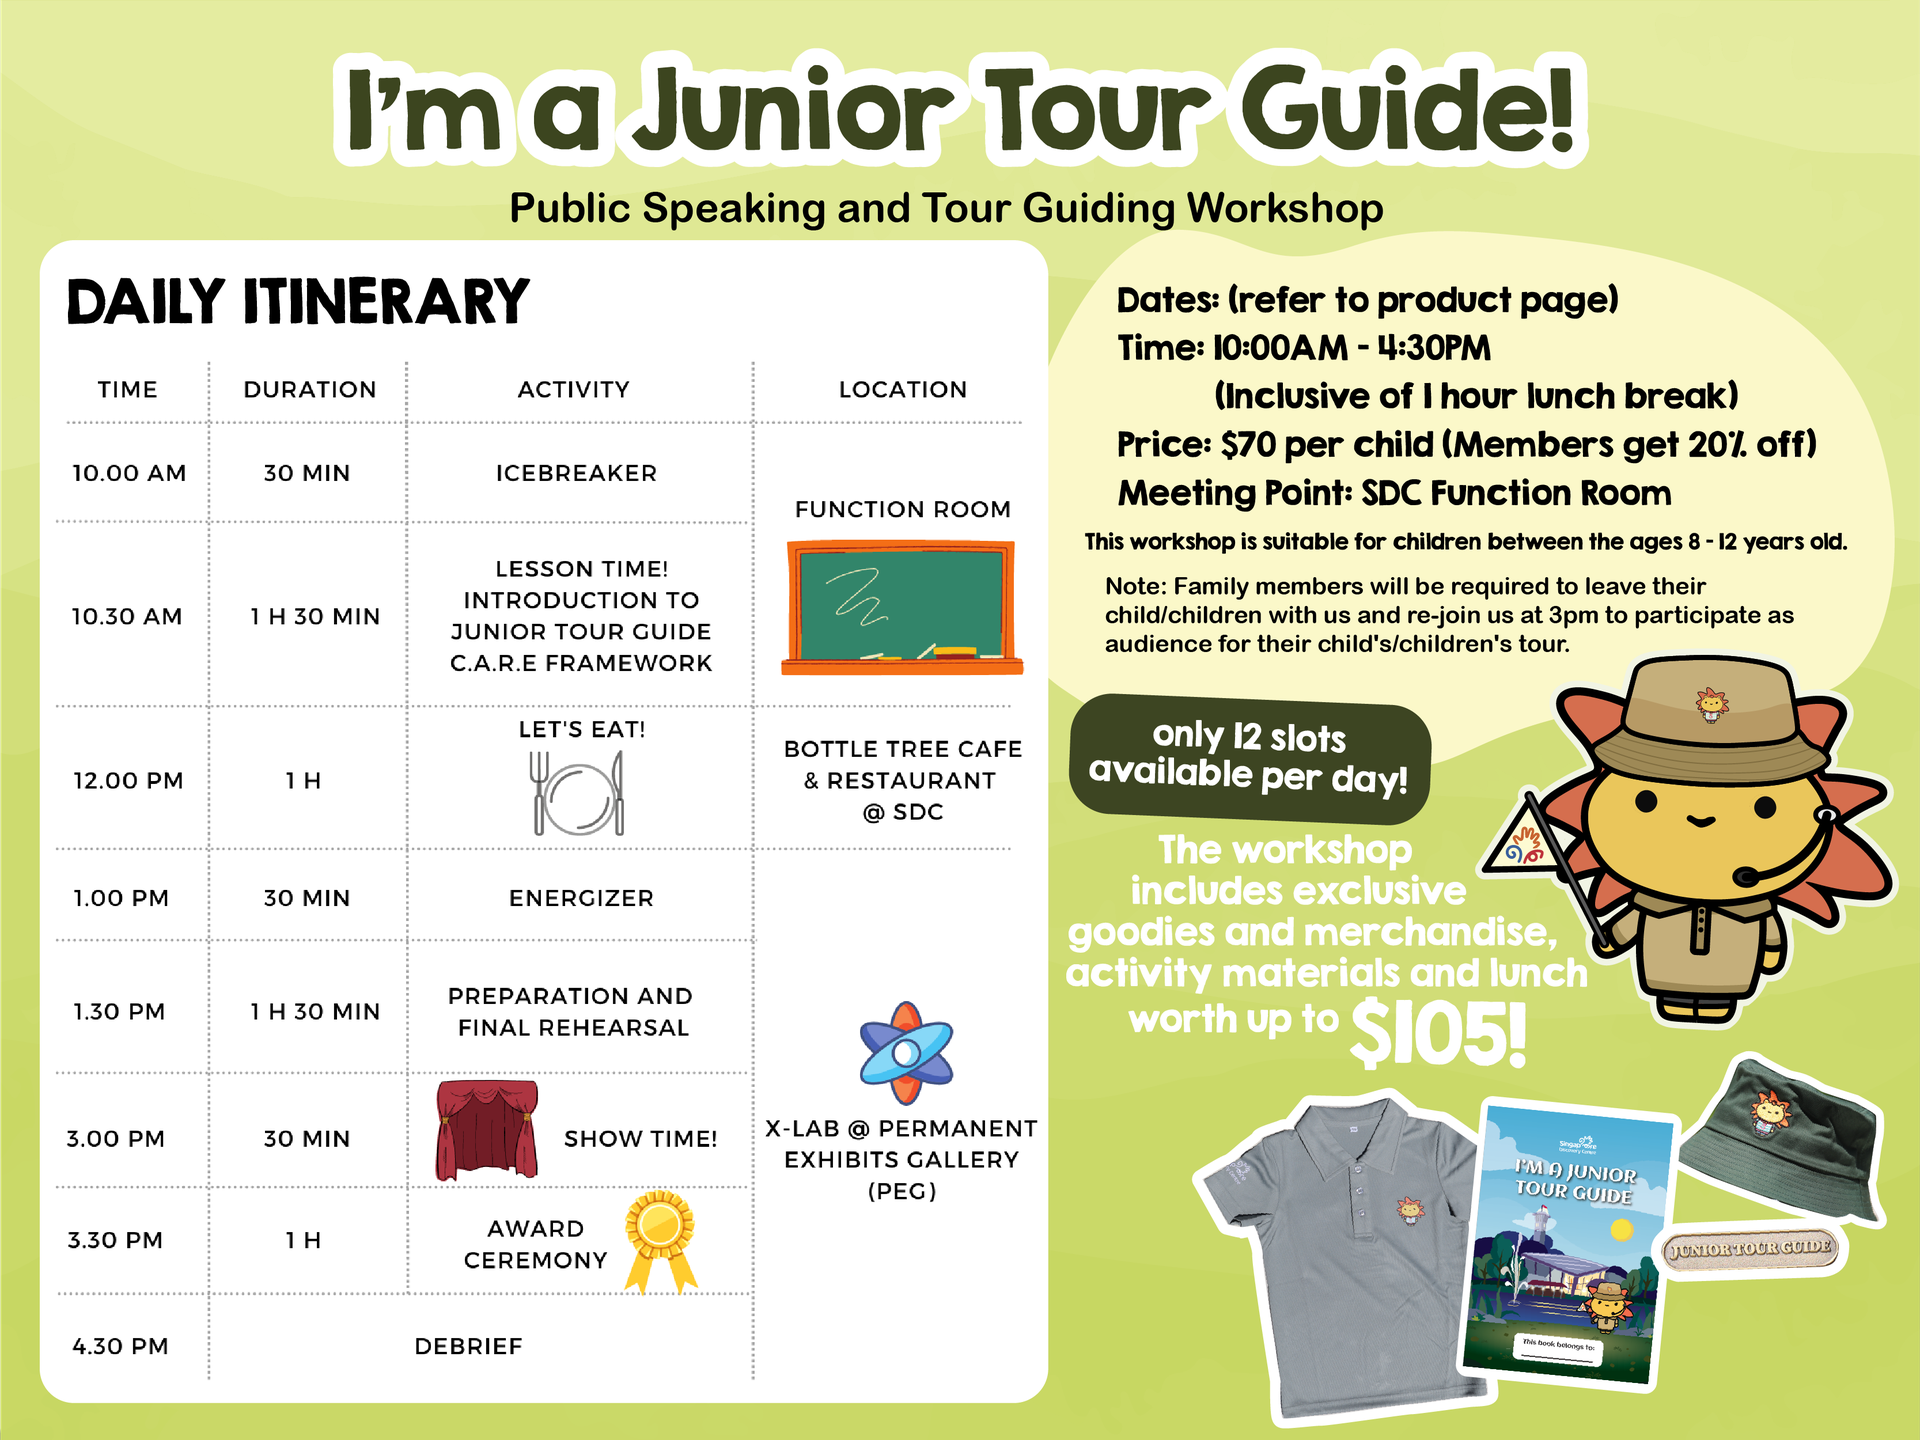 [IMJTG] I’m a Junior Tour Guide!